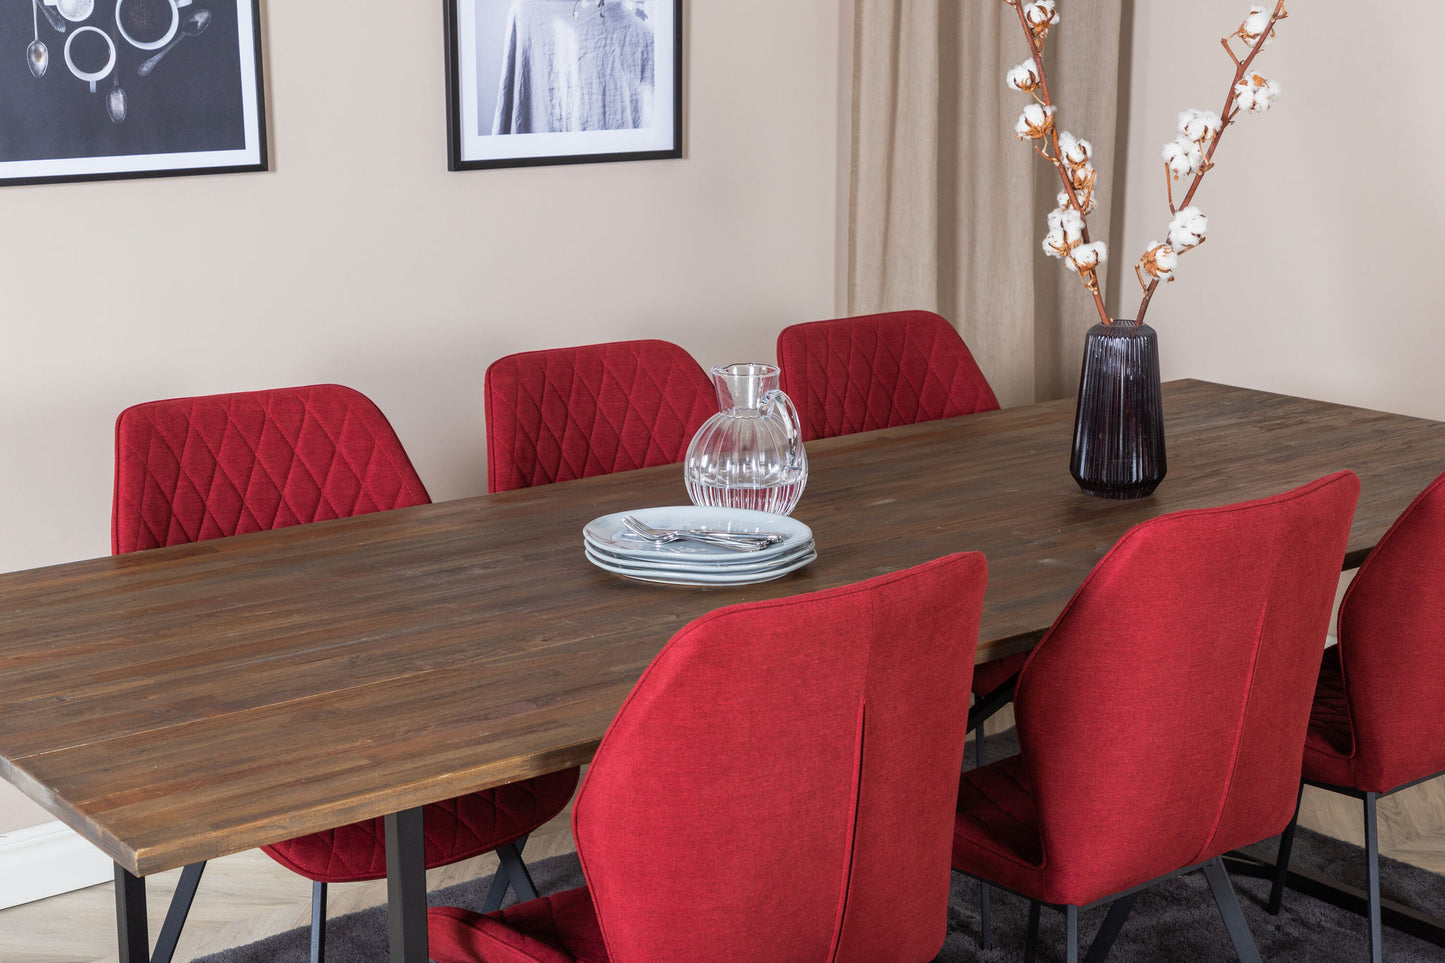 Padang - Spisebord, 250*100*H76 - Mørk Teak / Sort+Gemma Spisebordsstol - Sorte ben - Rødt stof